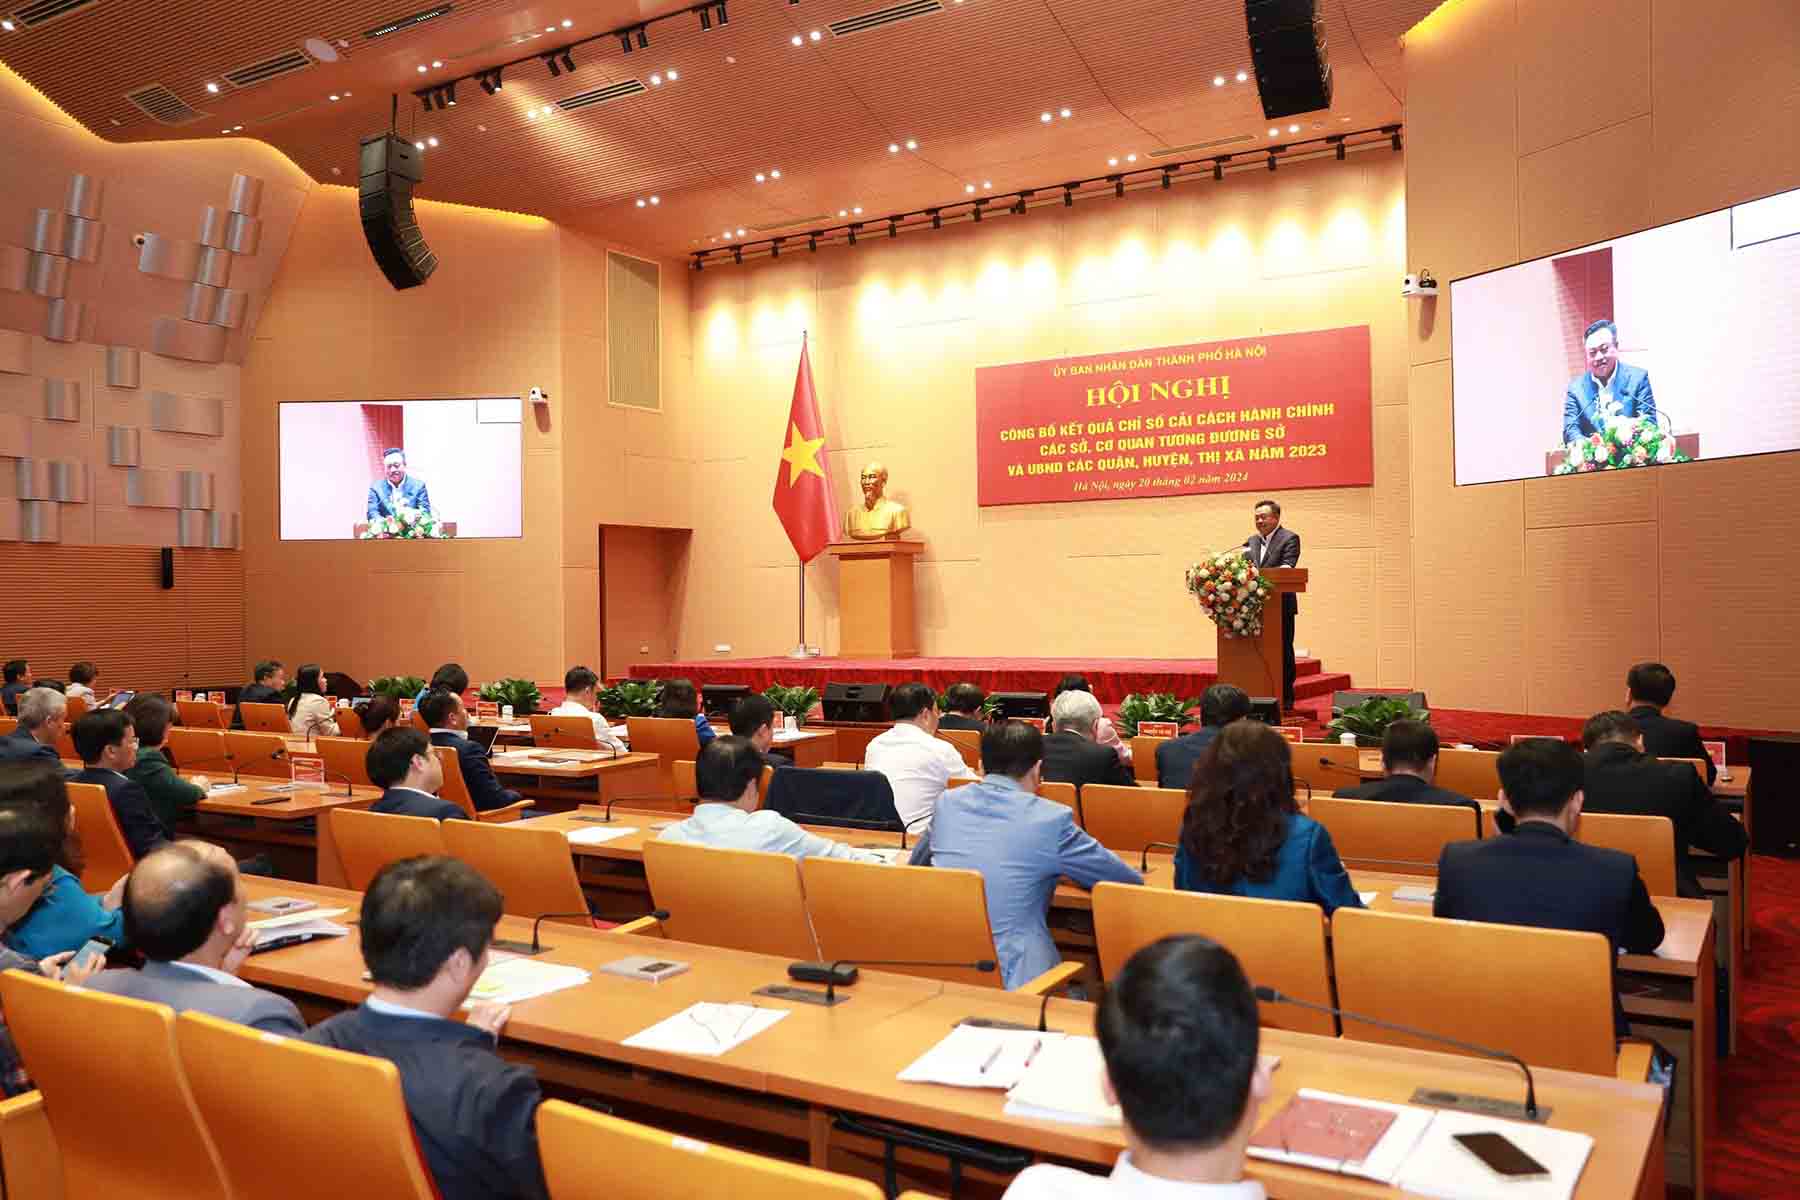 Hội nghị công bố kết quả chỉ số cải cách hành chính của Hà Nội. Ảnh: Phạm Đông